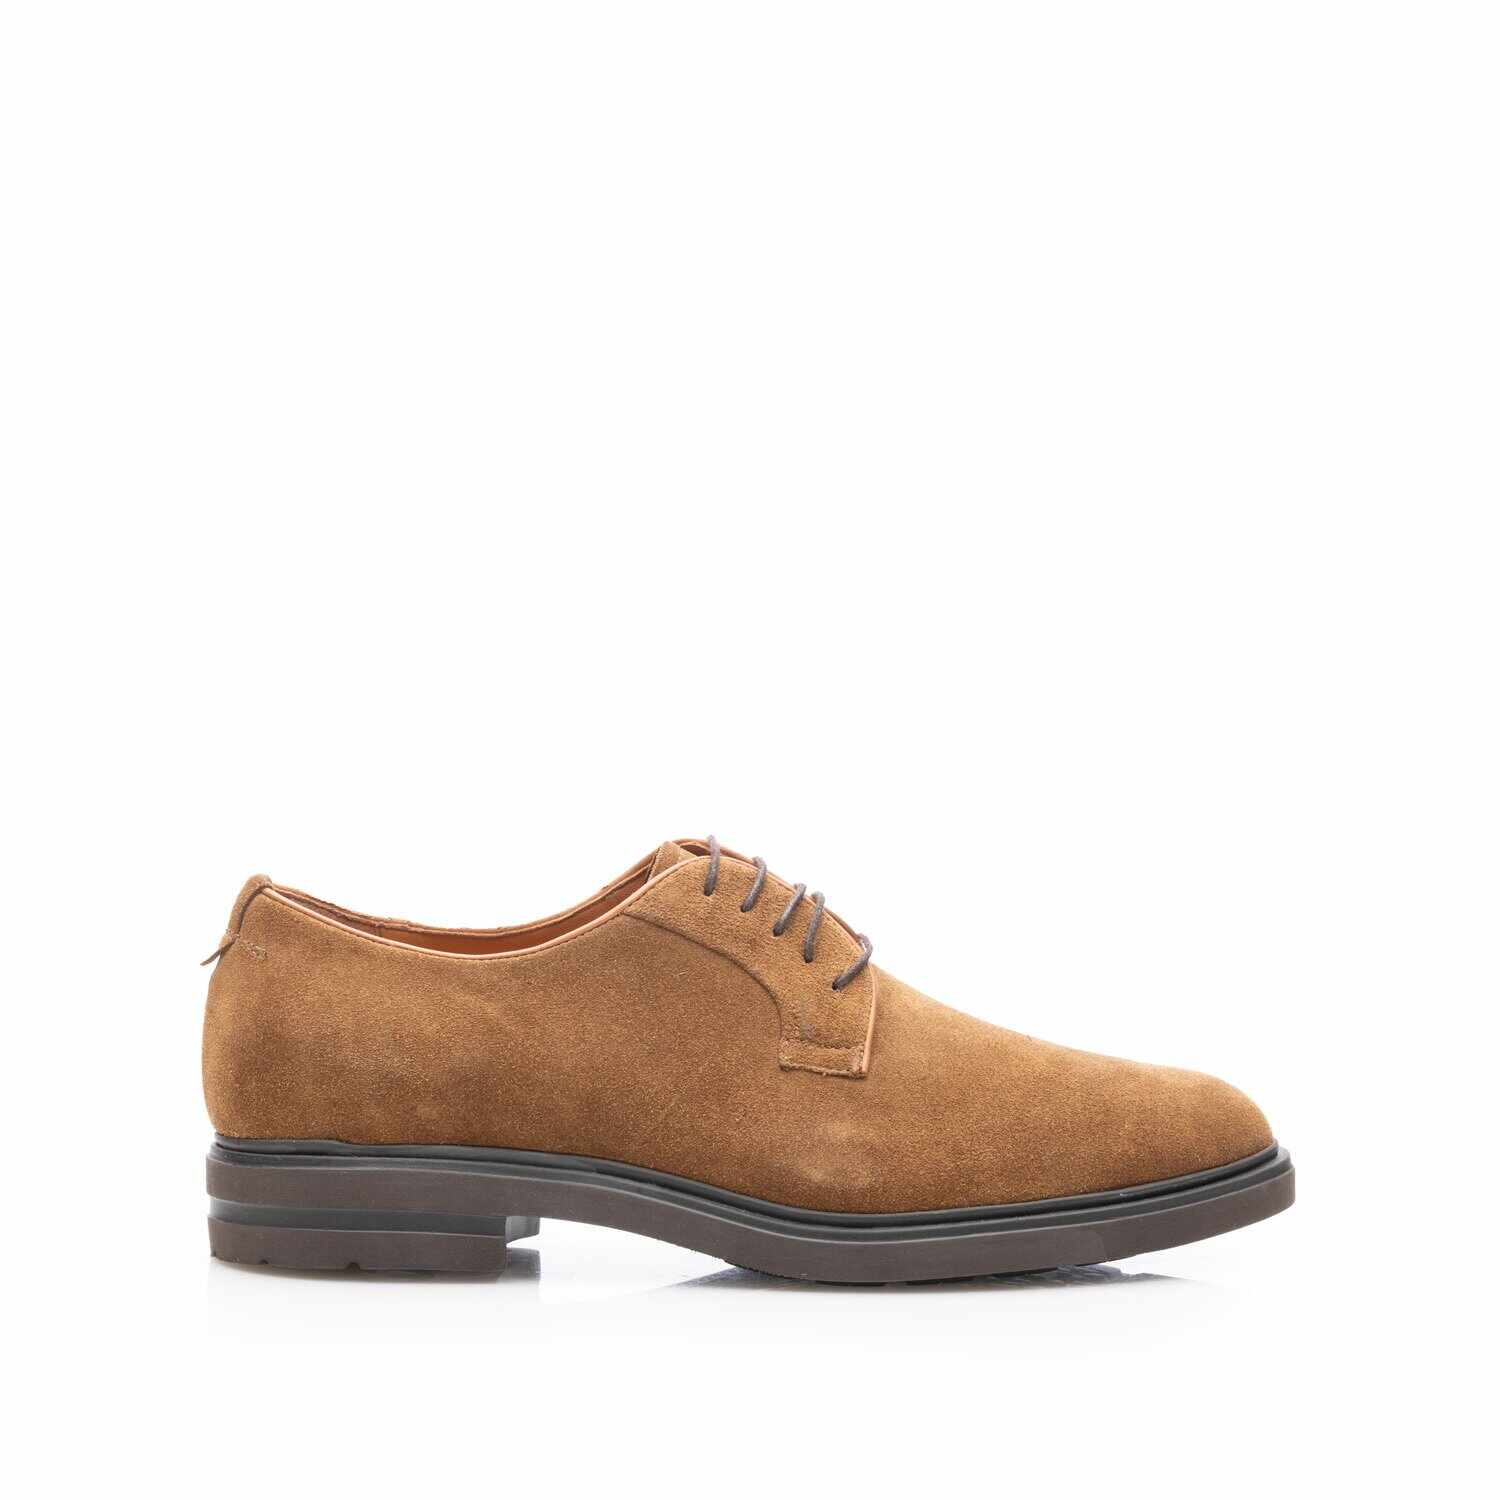 Pantofi casual bărbați din piele naturală, Leofex - 699 Cognac Velur